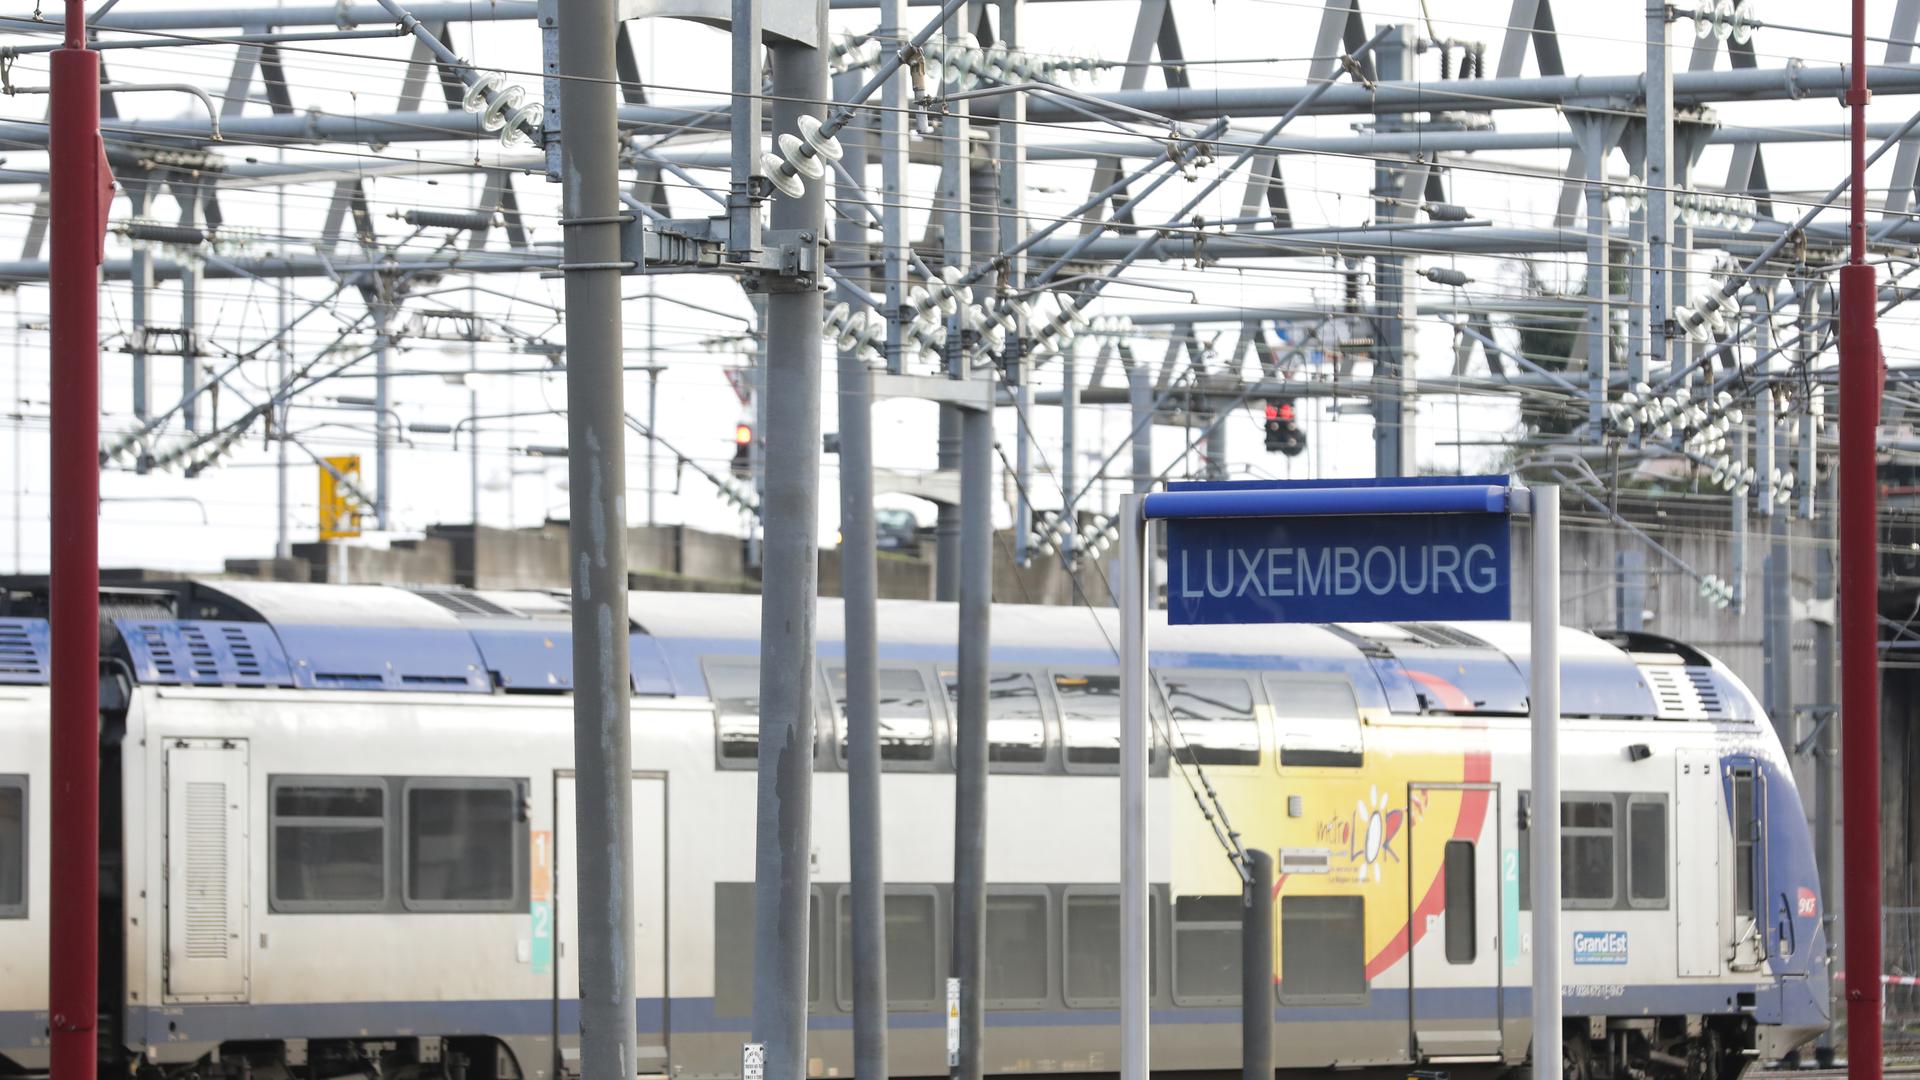 Pour Patrick Weiten, pas besoin de transiter par Metz pour relier la Sarre au Luxembourg en train. Une autre solution existe selon lui.